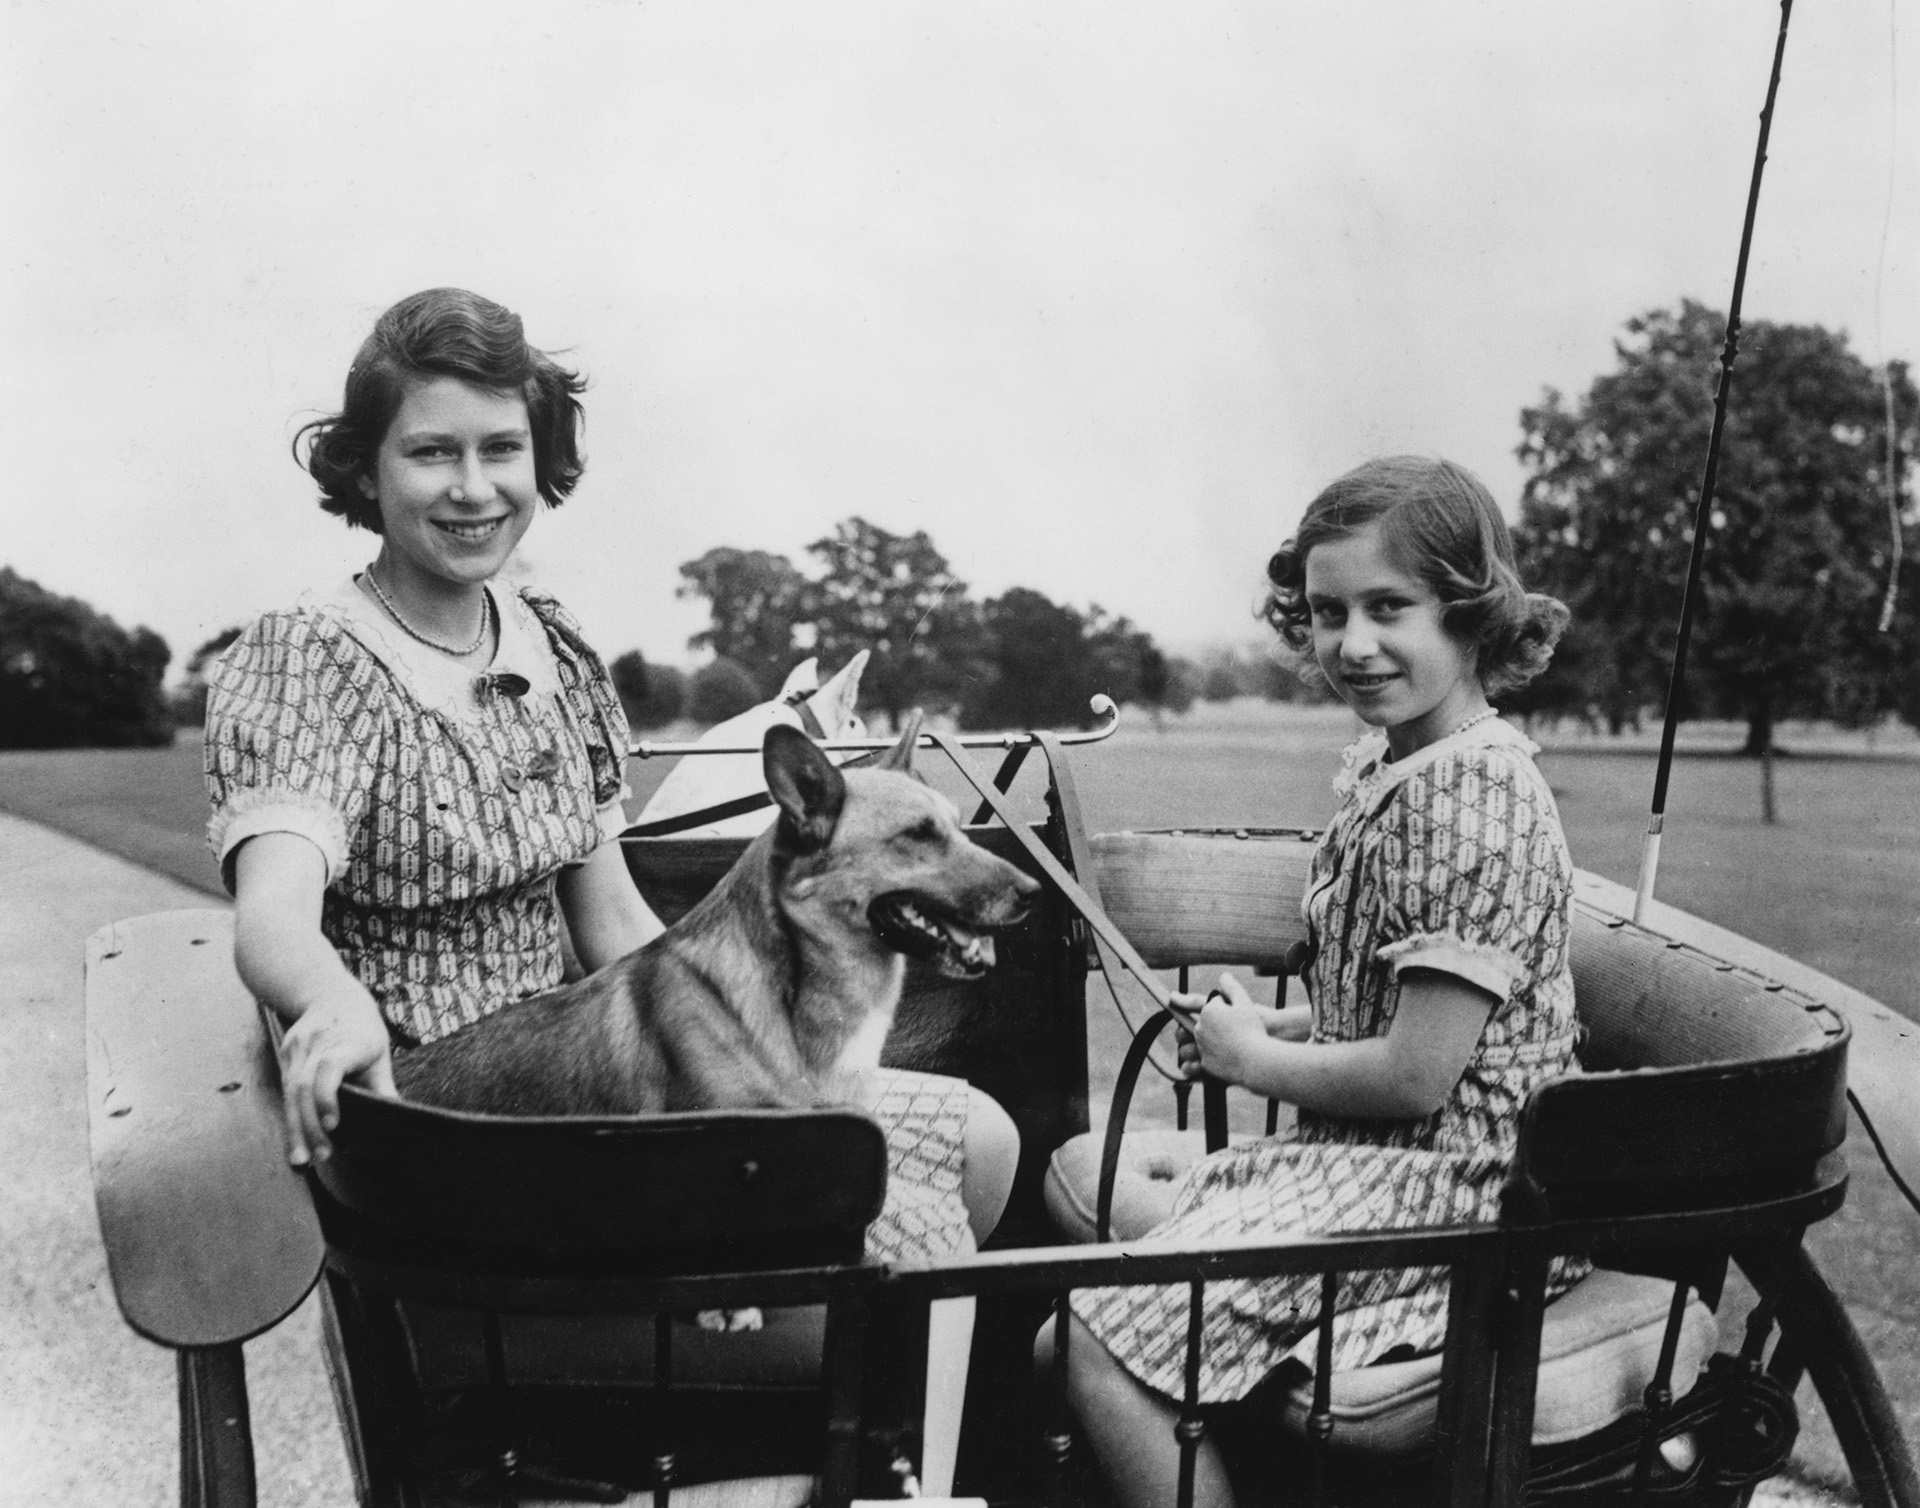 La princesa Isabel (ahora reina Isabel II, a la izquierda) y su hermana menor, la princesa Margarita Rosa (1930 - 2002), en un carruaje en los terrenos de la Casa Real en Windsor Great Park, el 4 de julio de 1940. (Foto de PNA/Hulton Archive/Getty Images) 